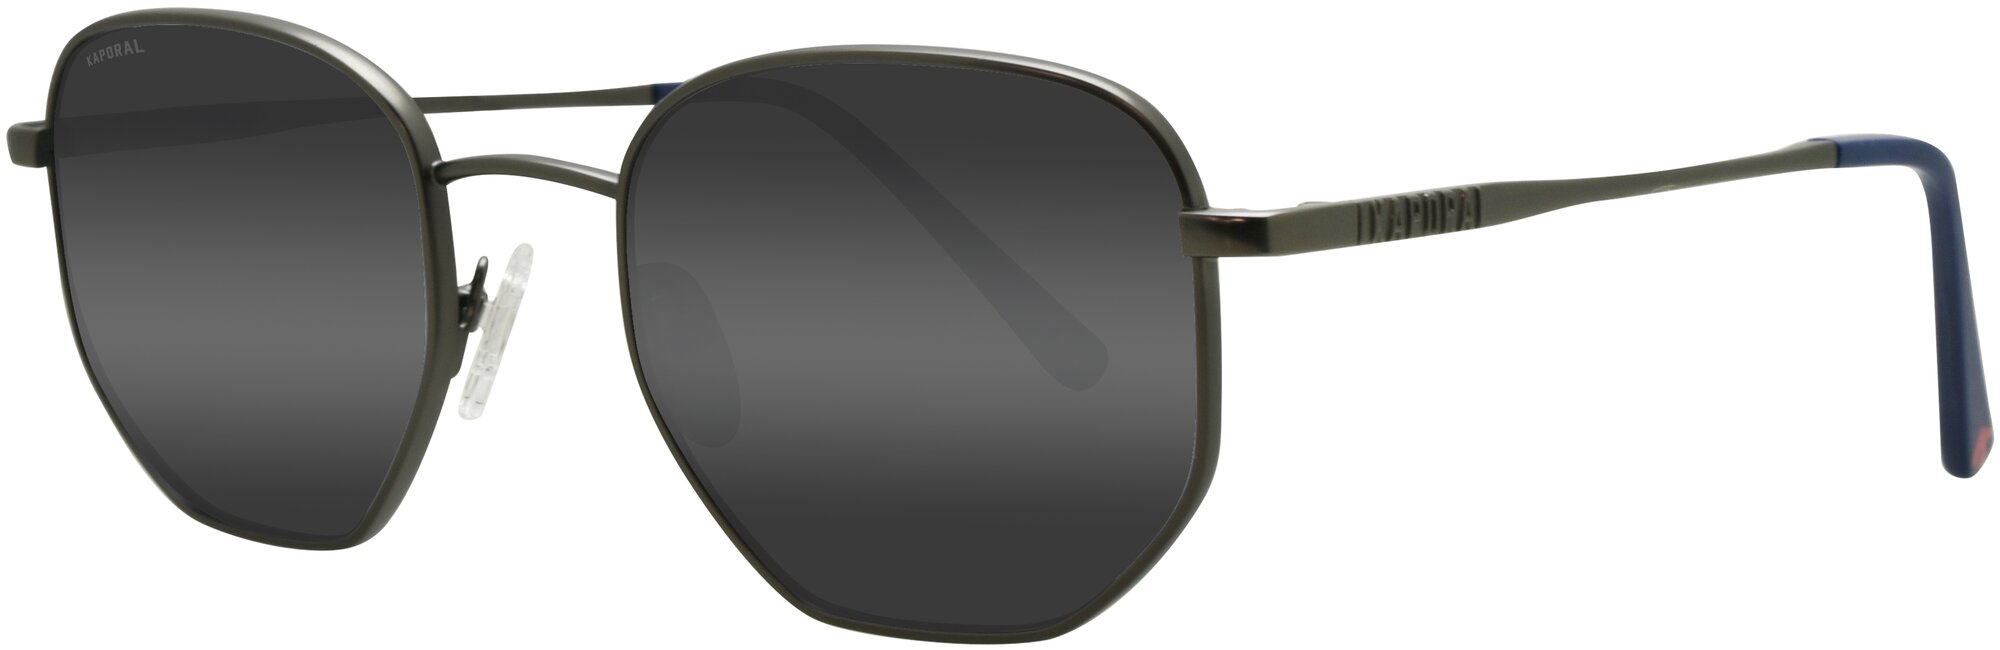 Солнцезащитные очки Kaporal